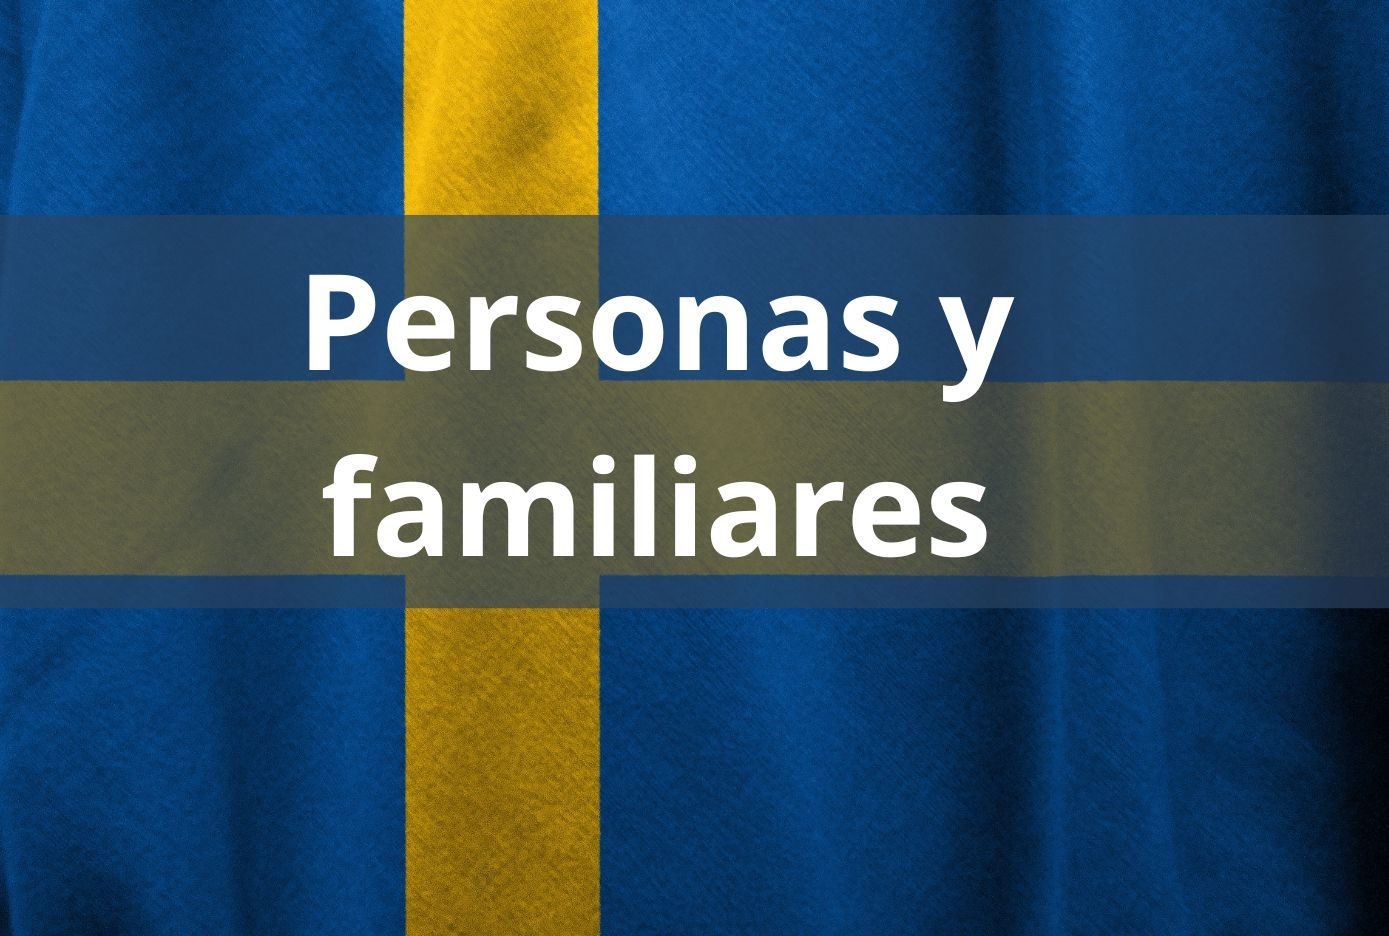 peersonas y familiares en sueco